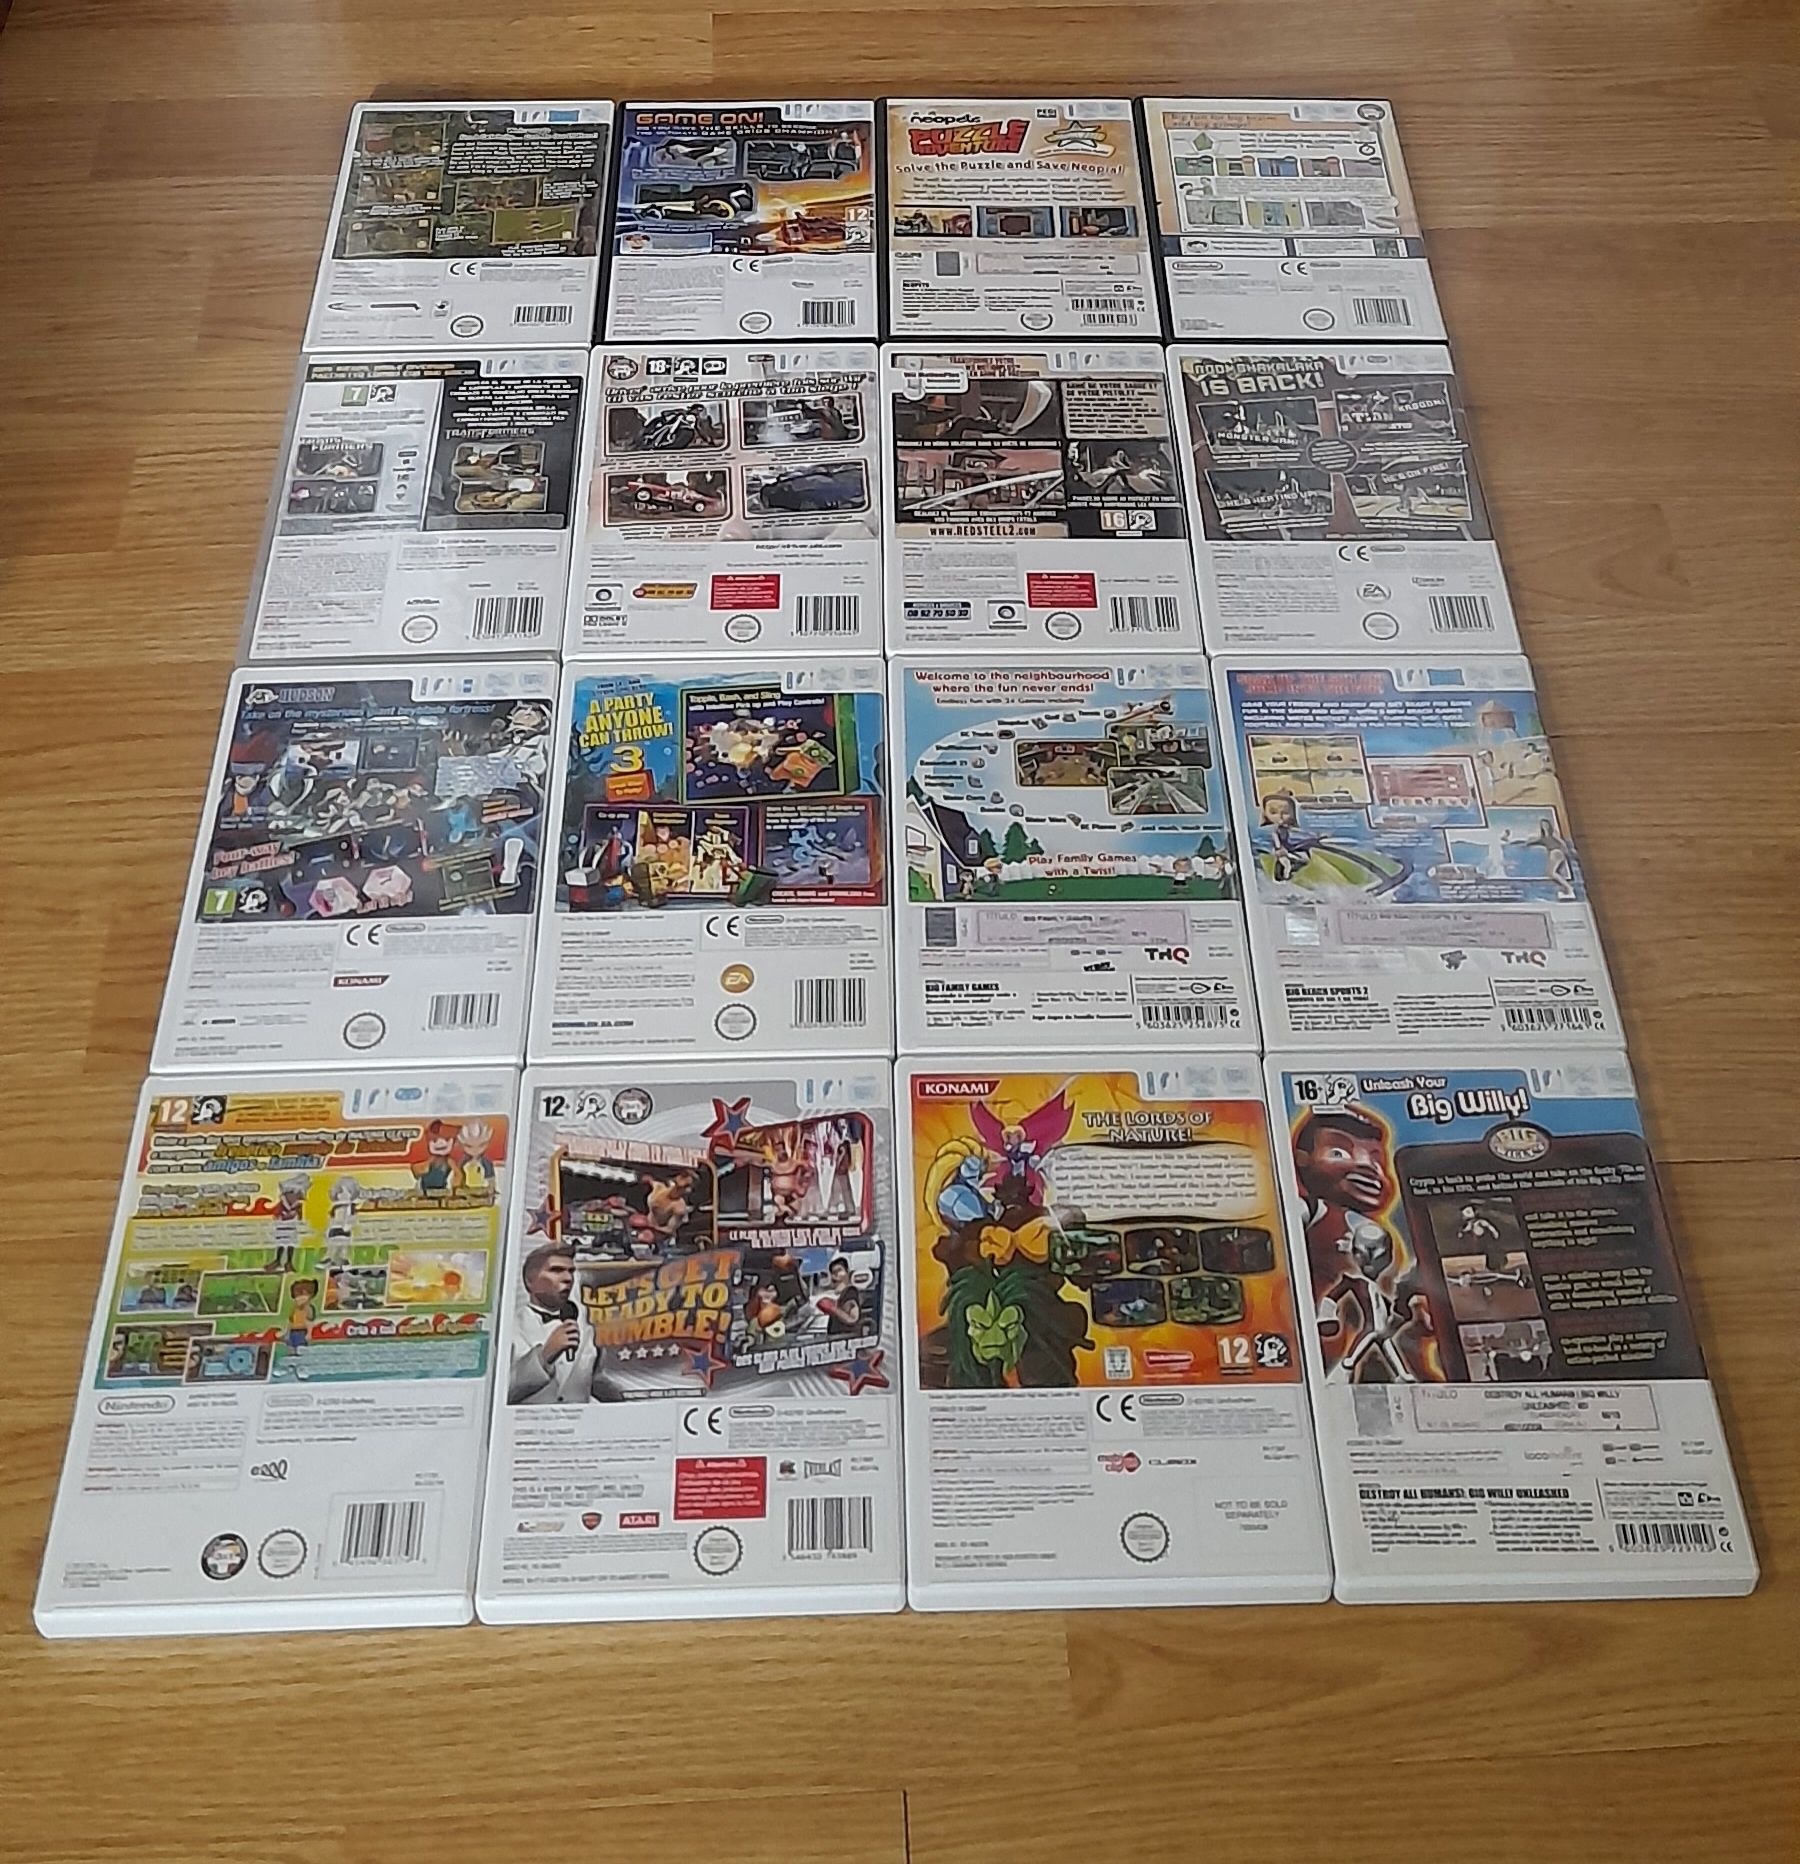 Jogos Originais Nintendo Wii/Wii U a partir de 5€